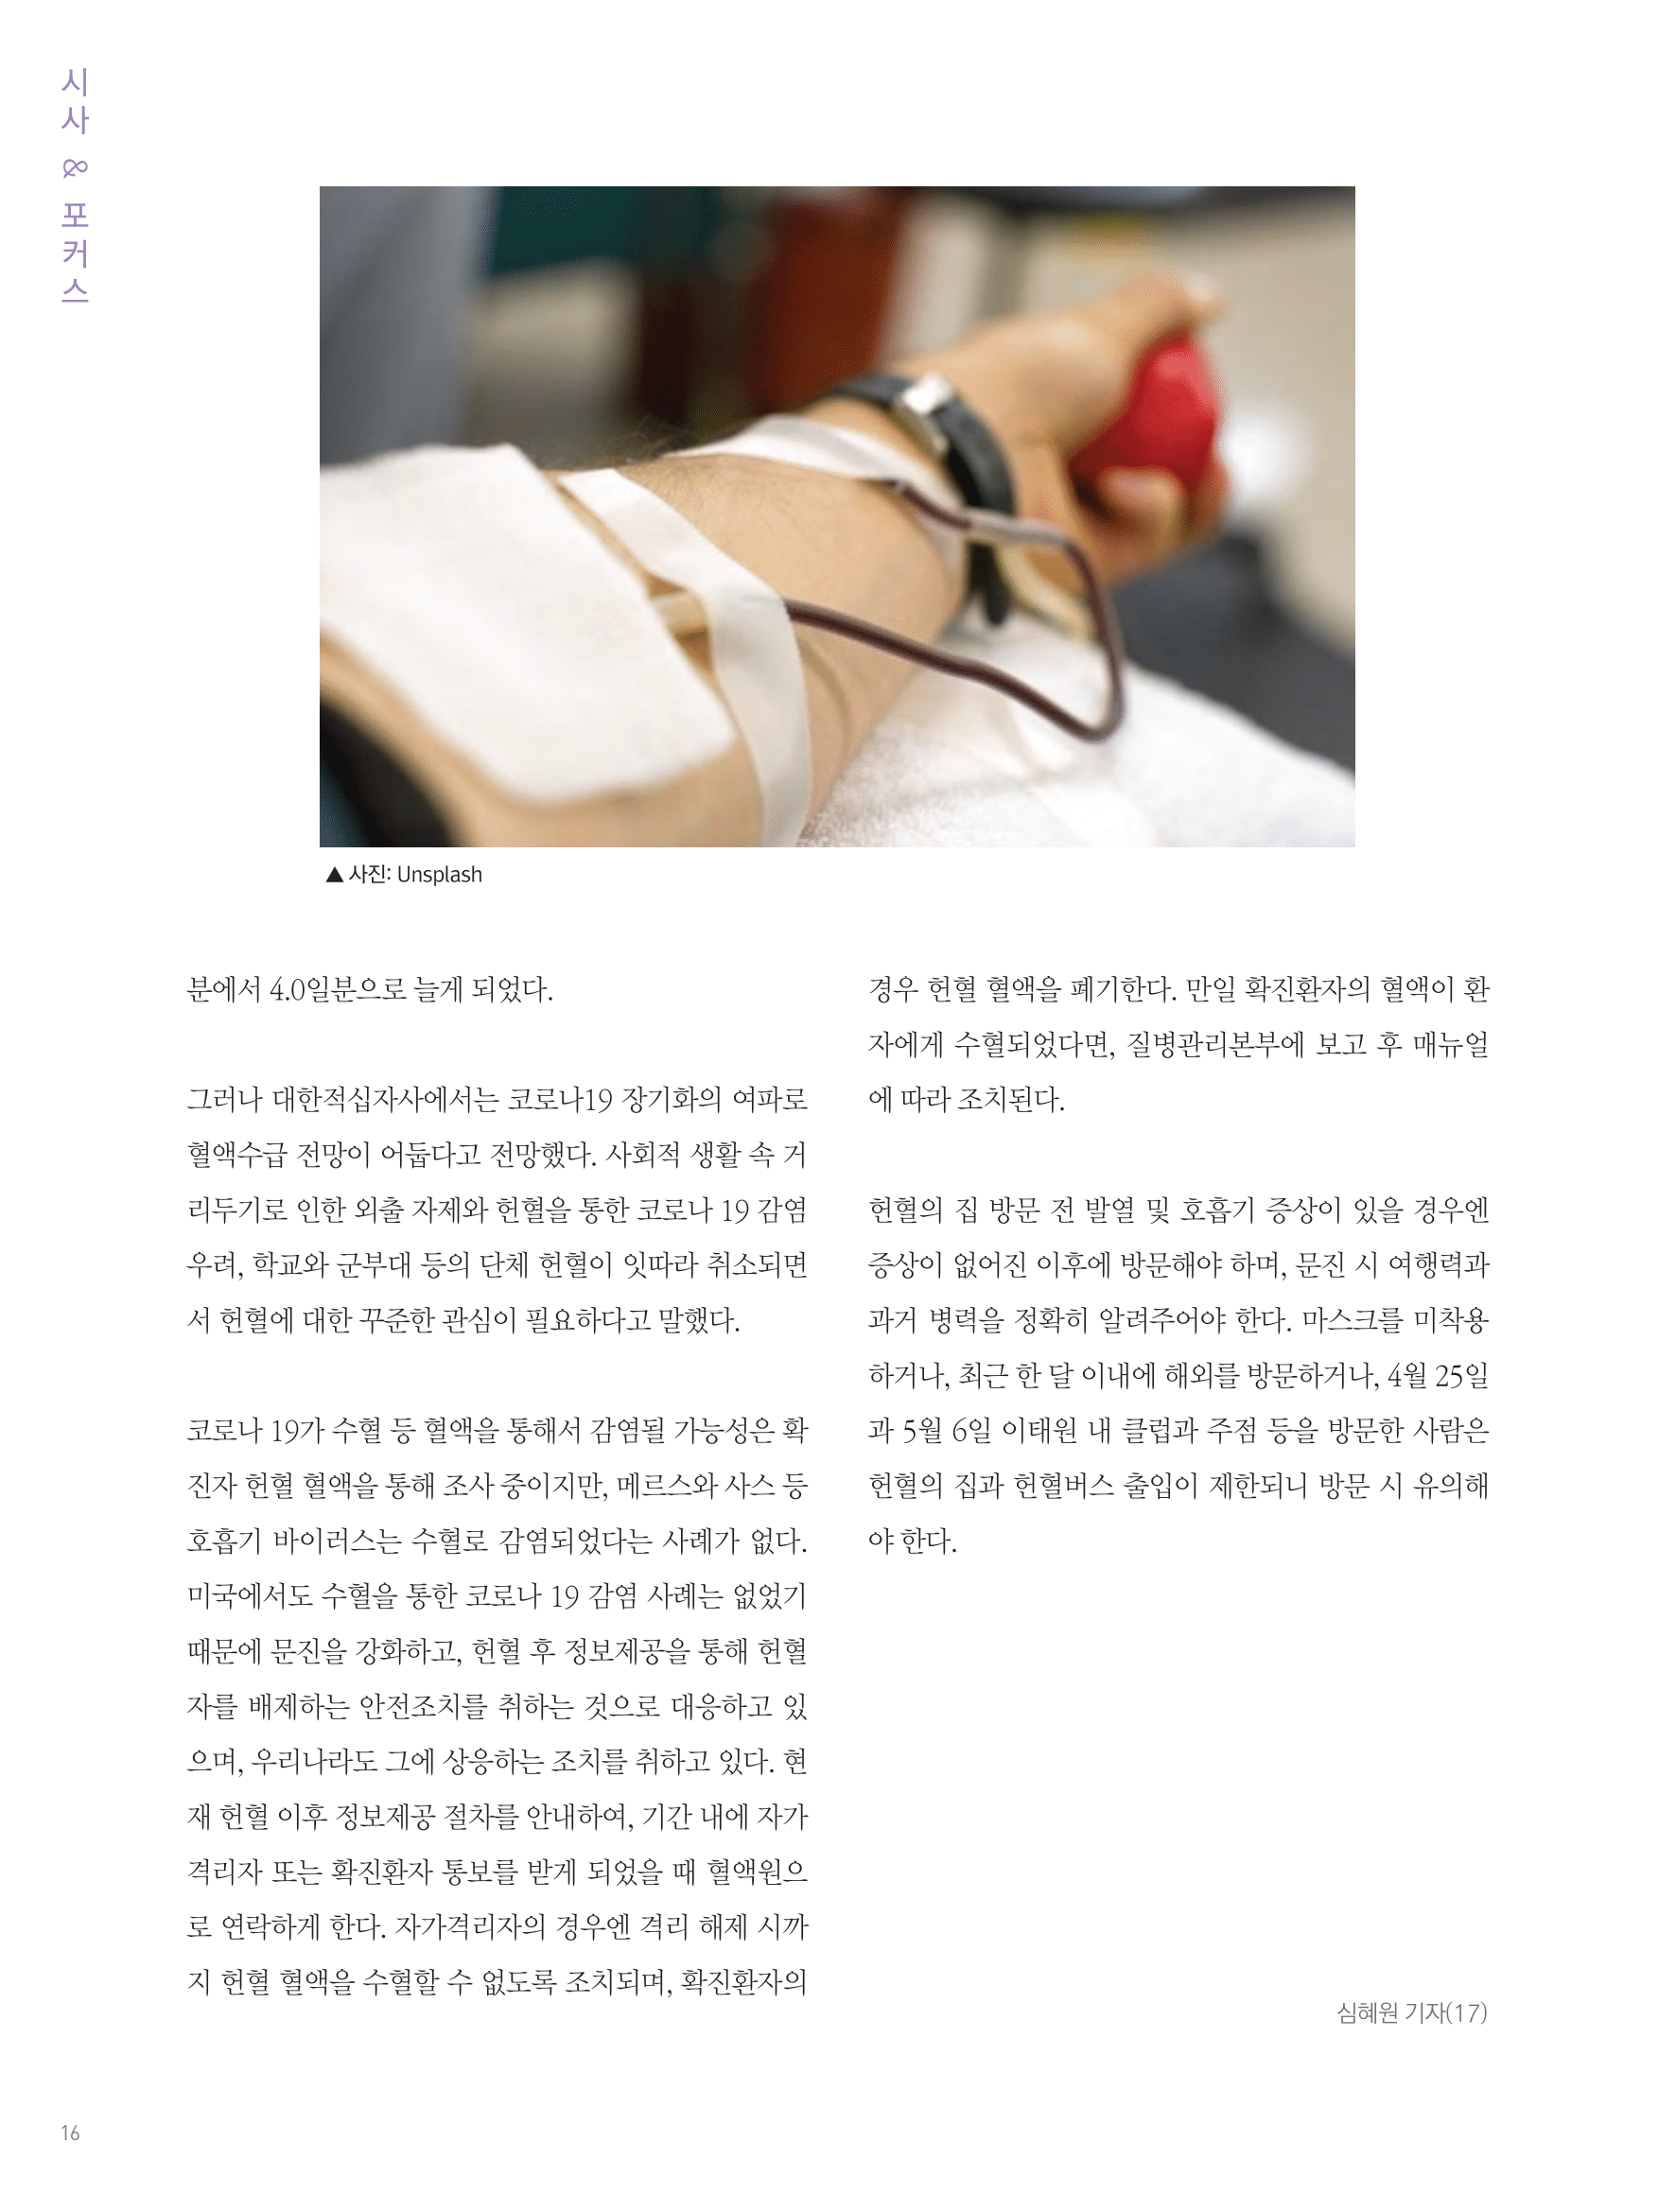 뜻새김 신문 75호 14